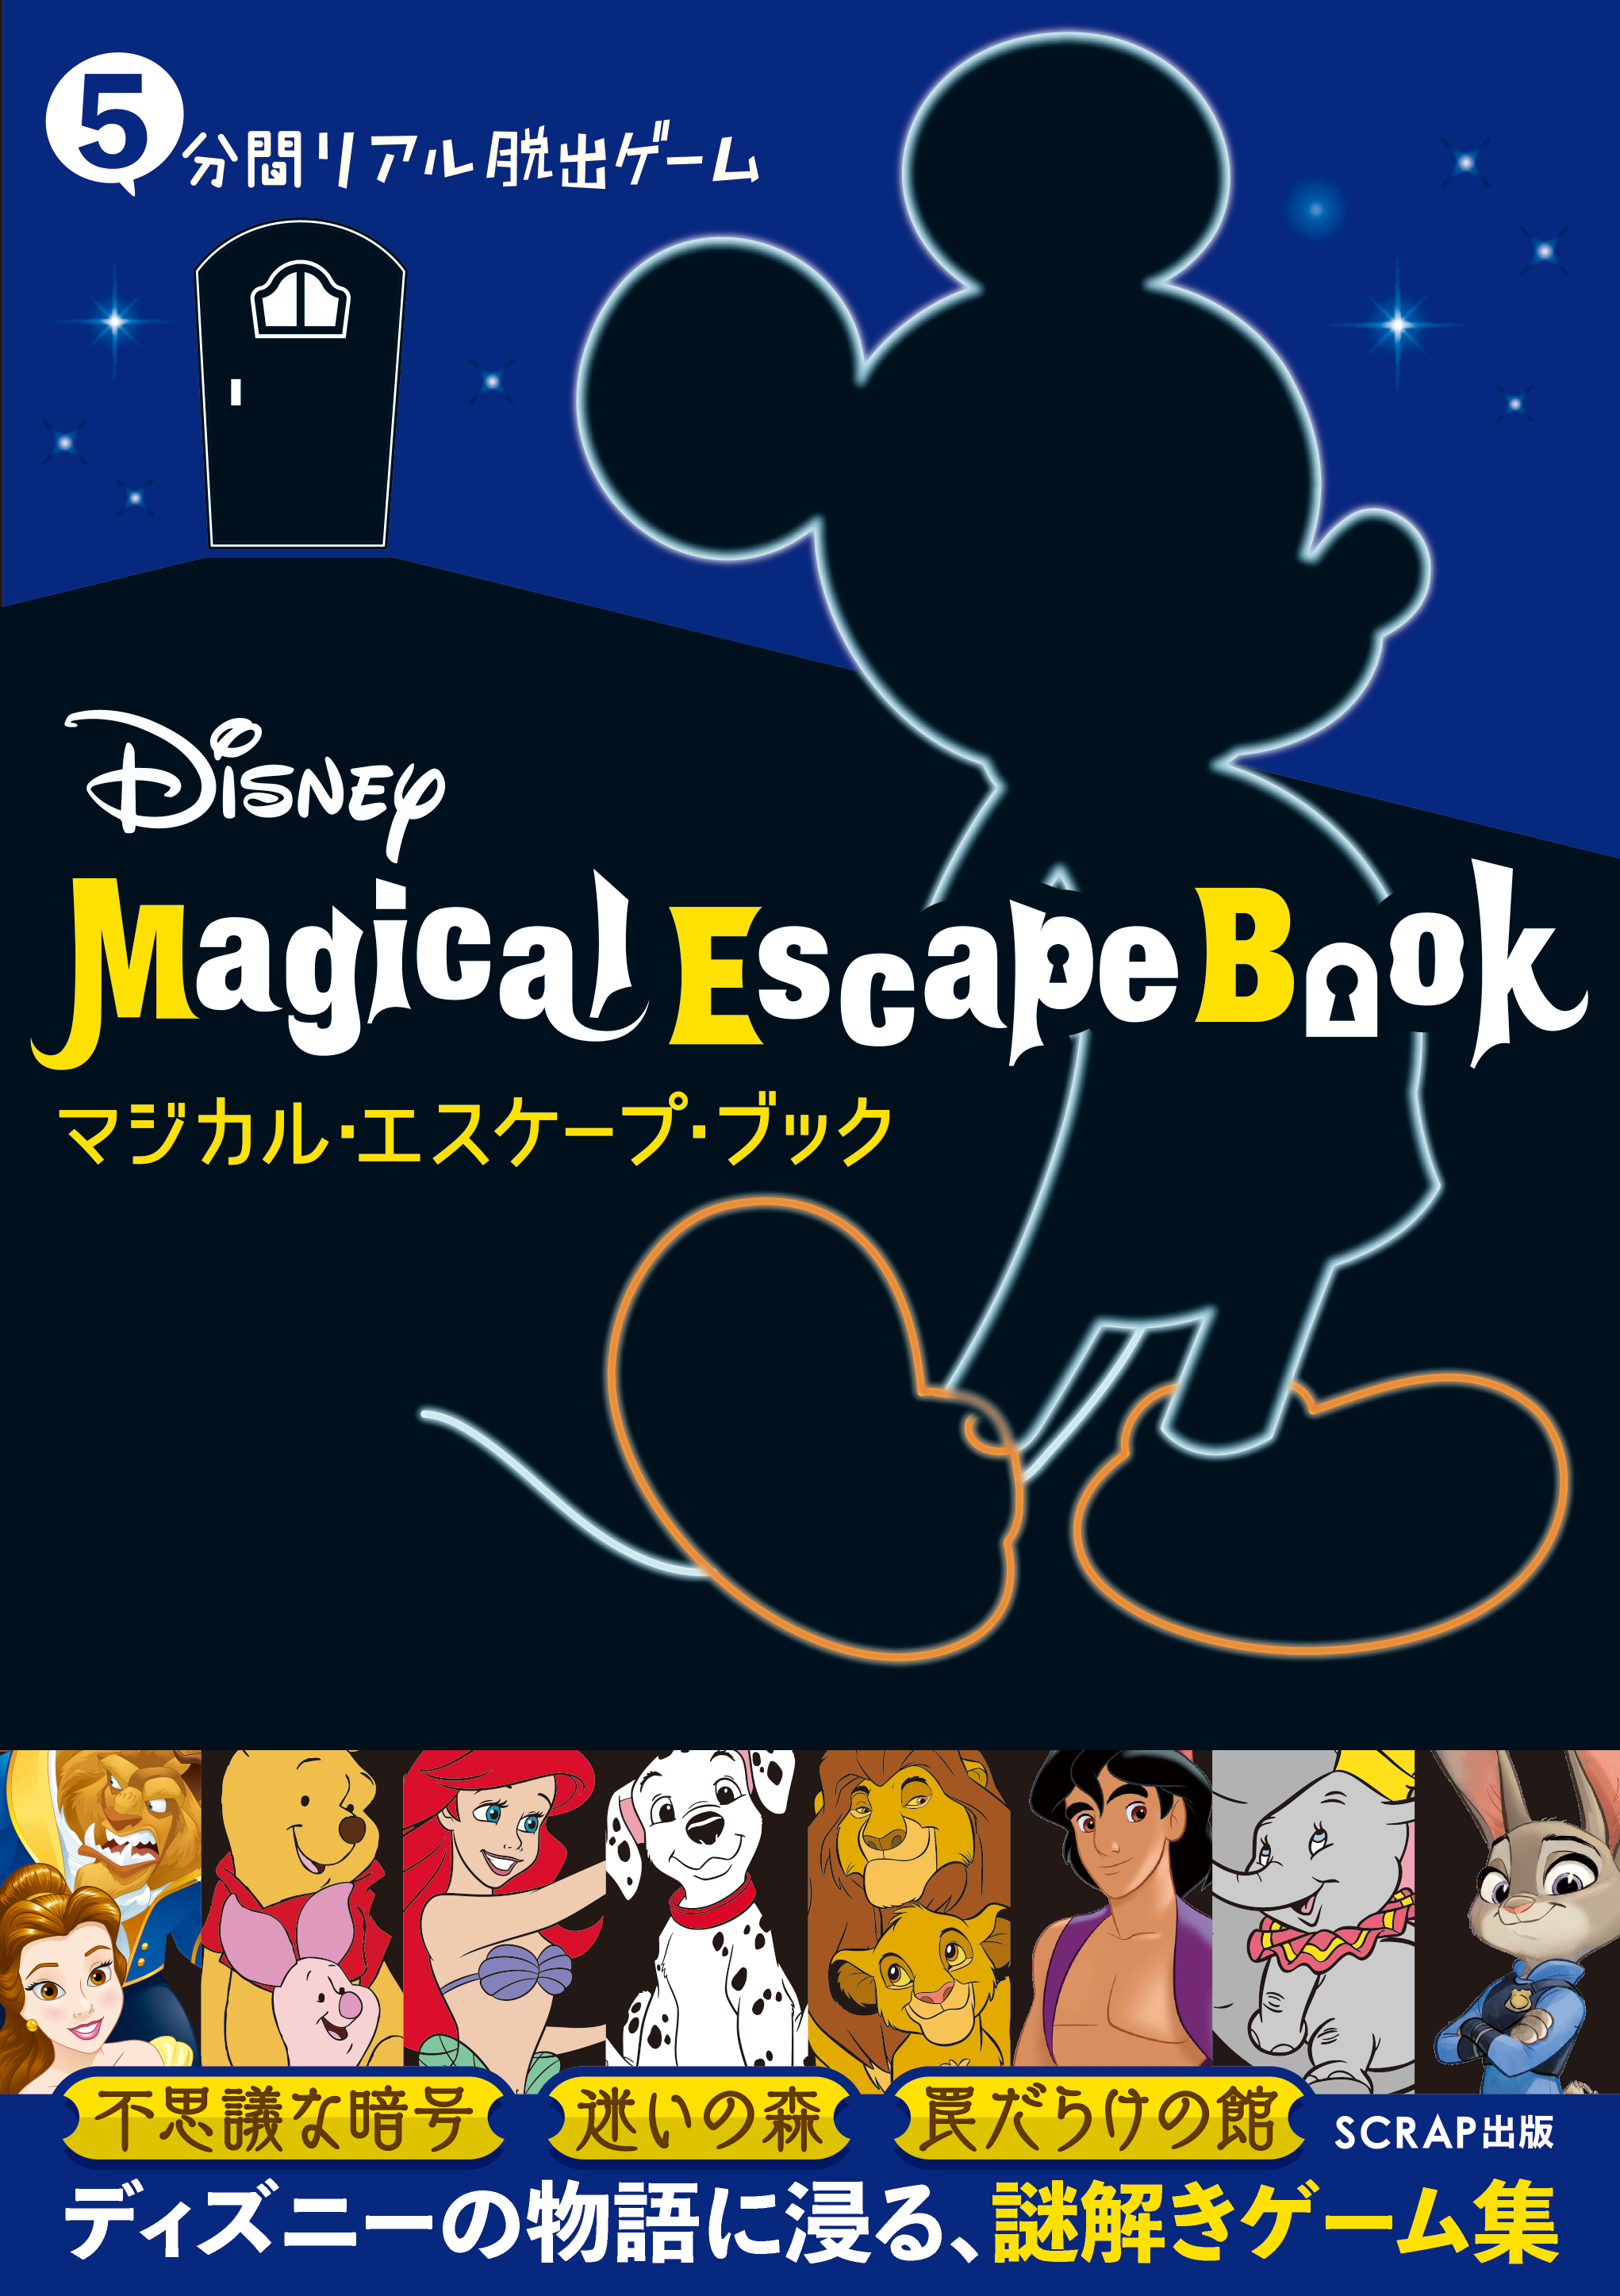 5分間リアル脱出ゲーム『Disney Magical Escape Book』本日より予約